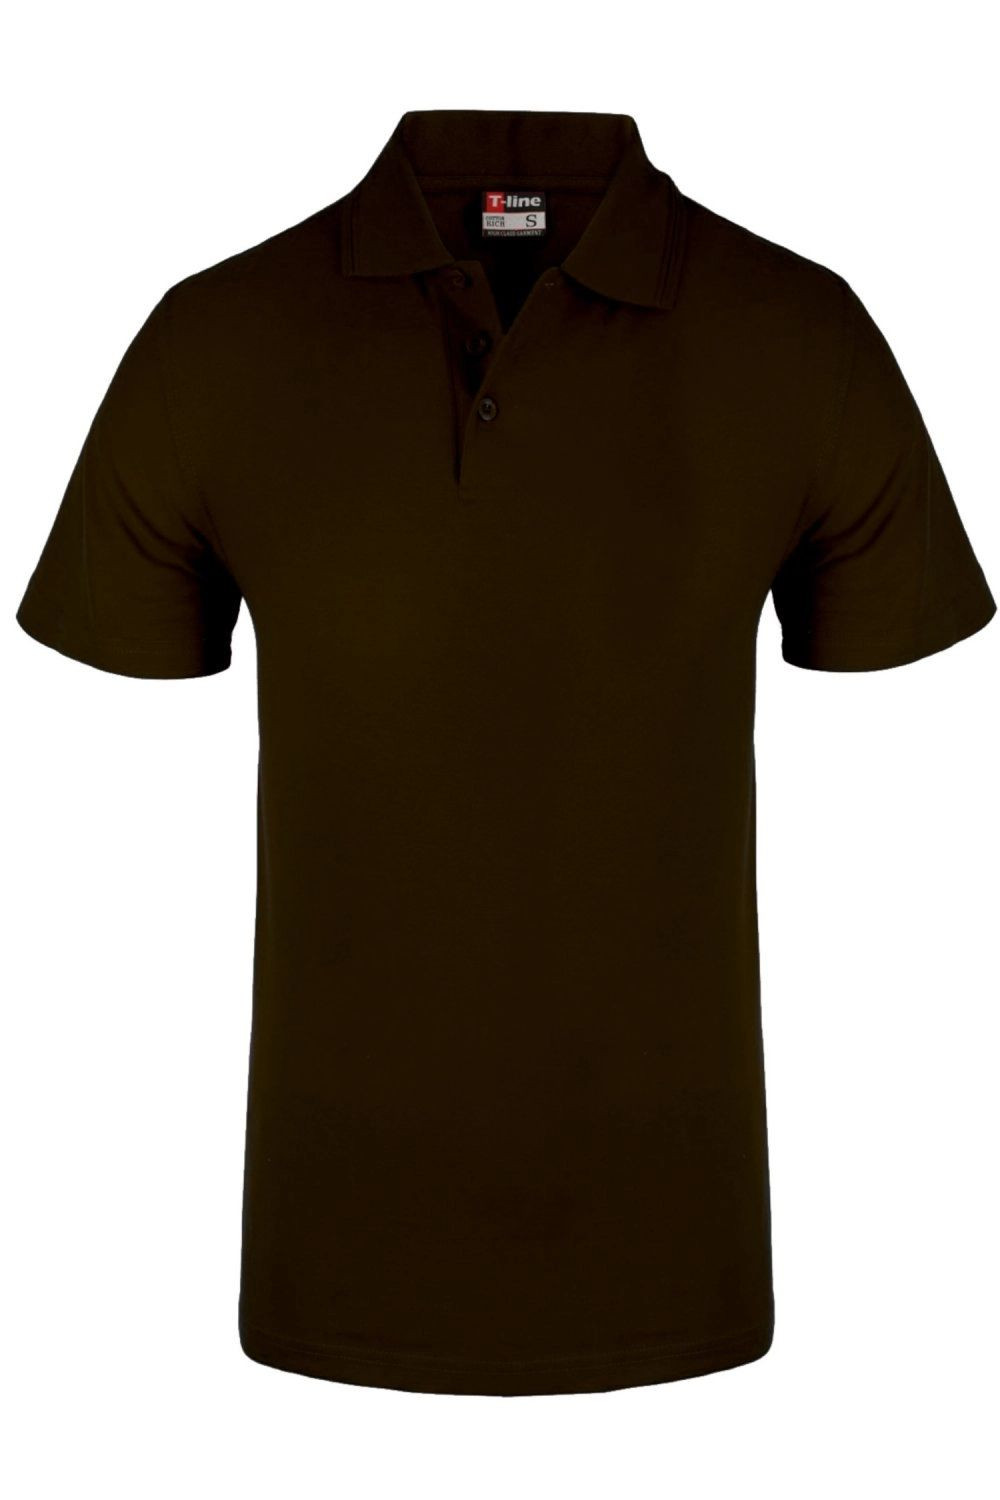 Pánské tričko 19406 T-line hnědá - HENDERSON Hnědá M